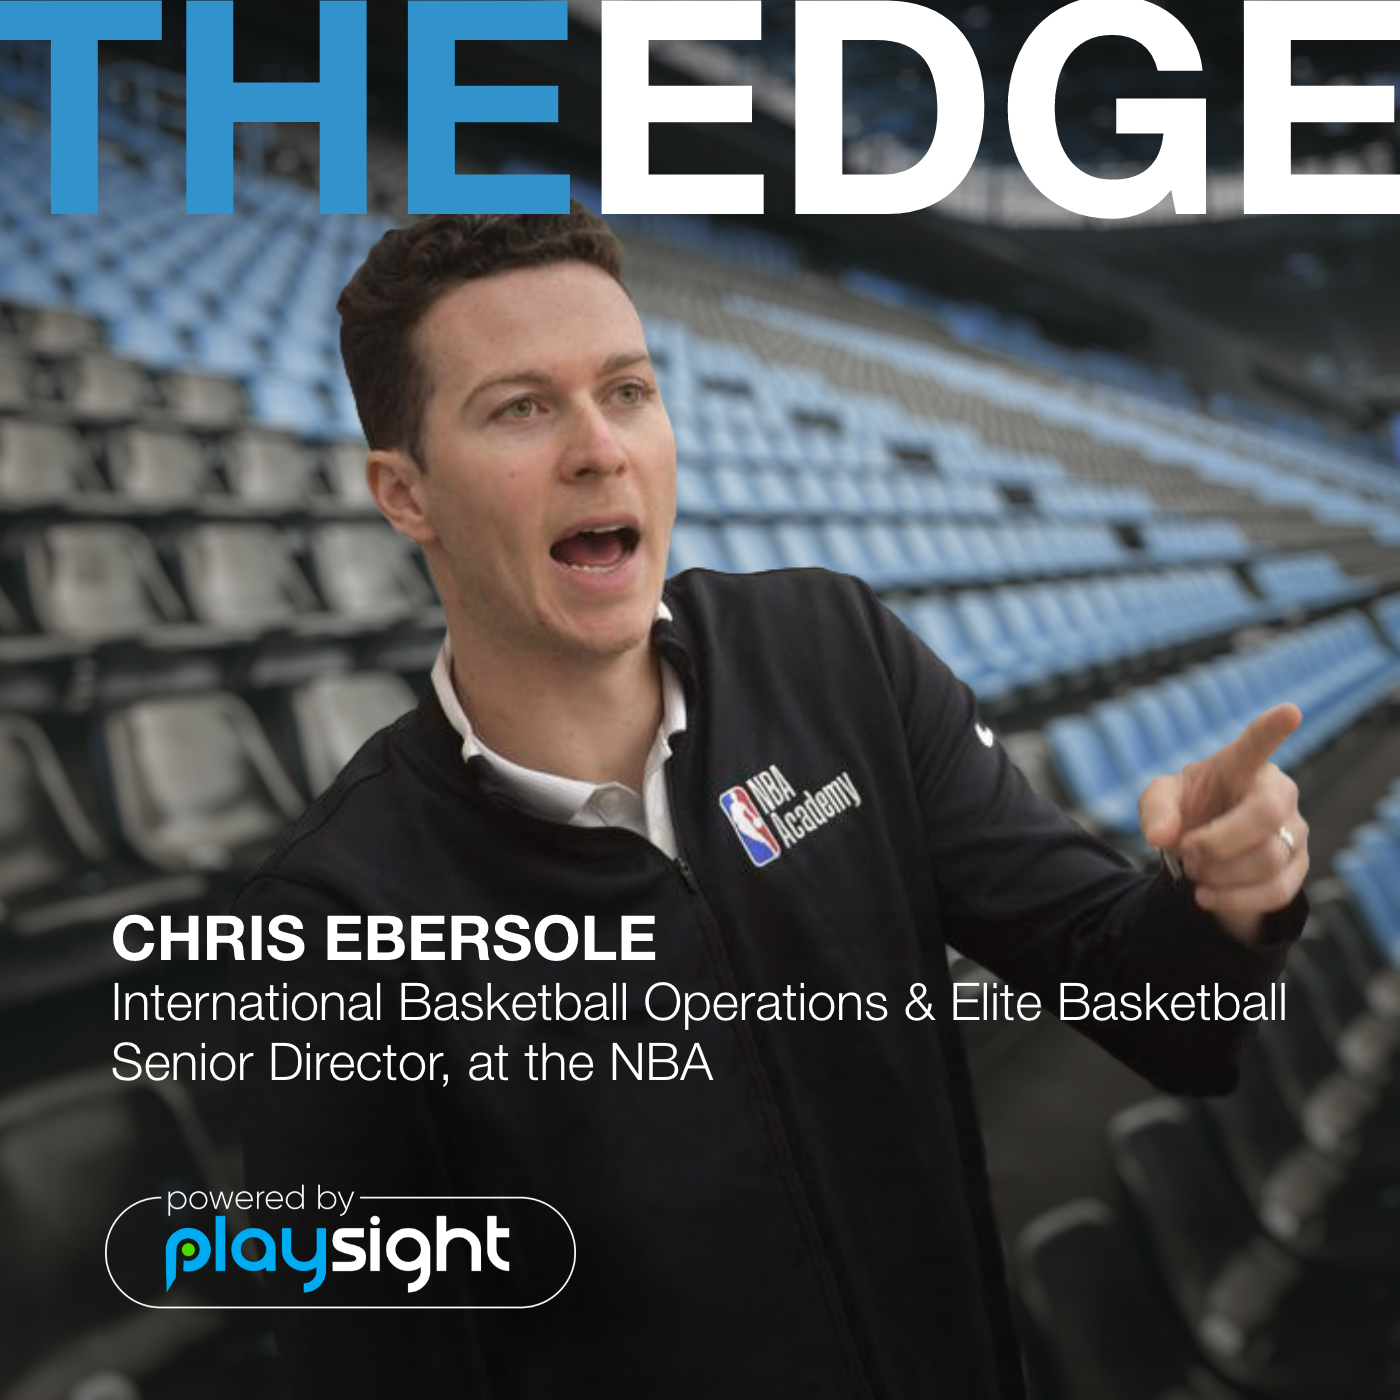 S01E09 Playsight The Edge Chris Ebersole Artwork 200709 – 2 Https://Playsight.com